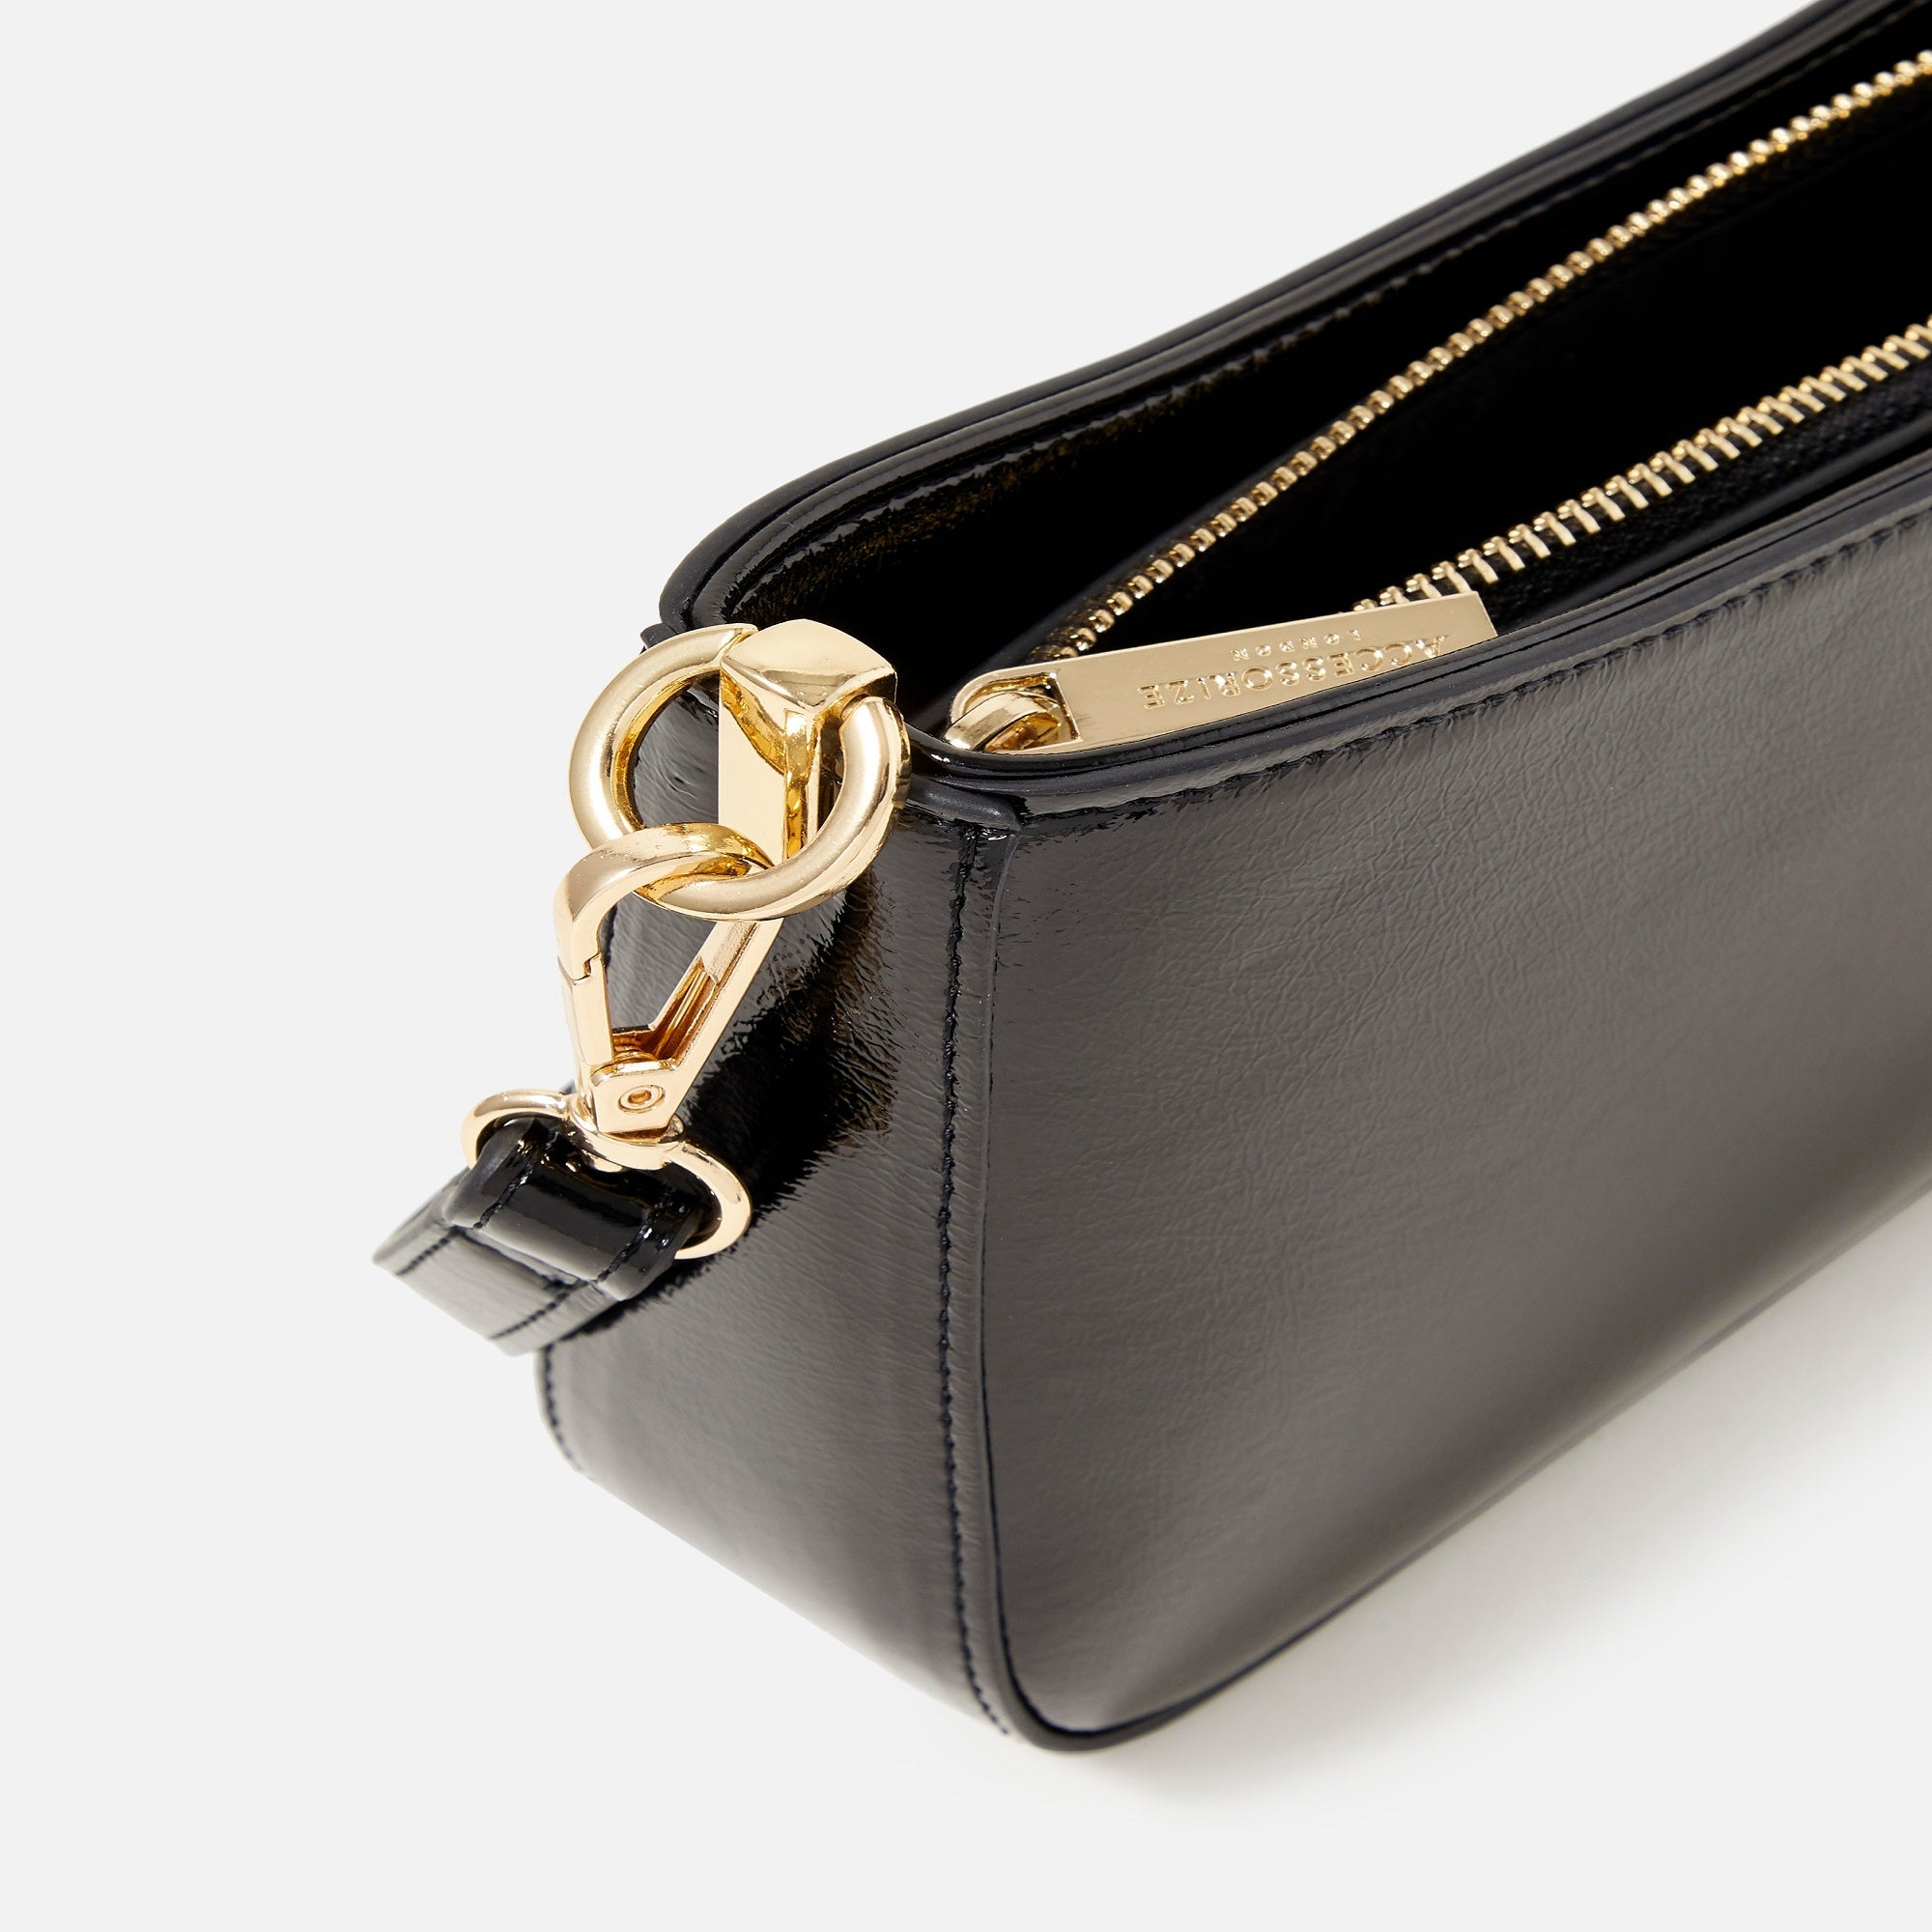 Accessorize London Women's Faux Leather Black Roxanne Shoulder Bag